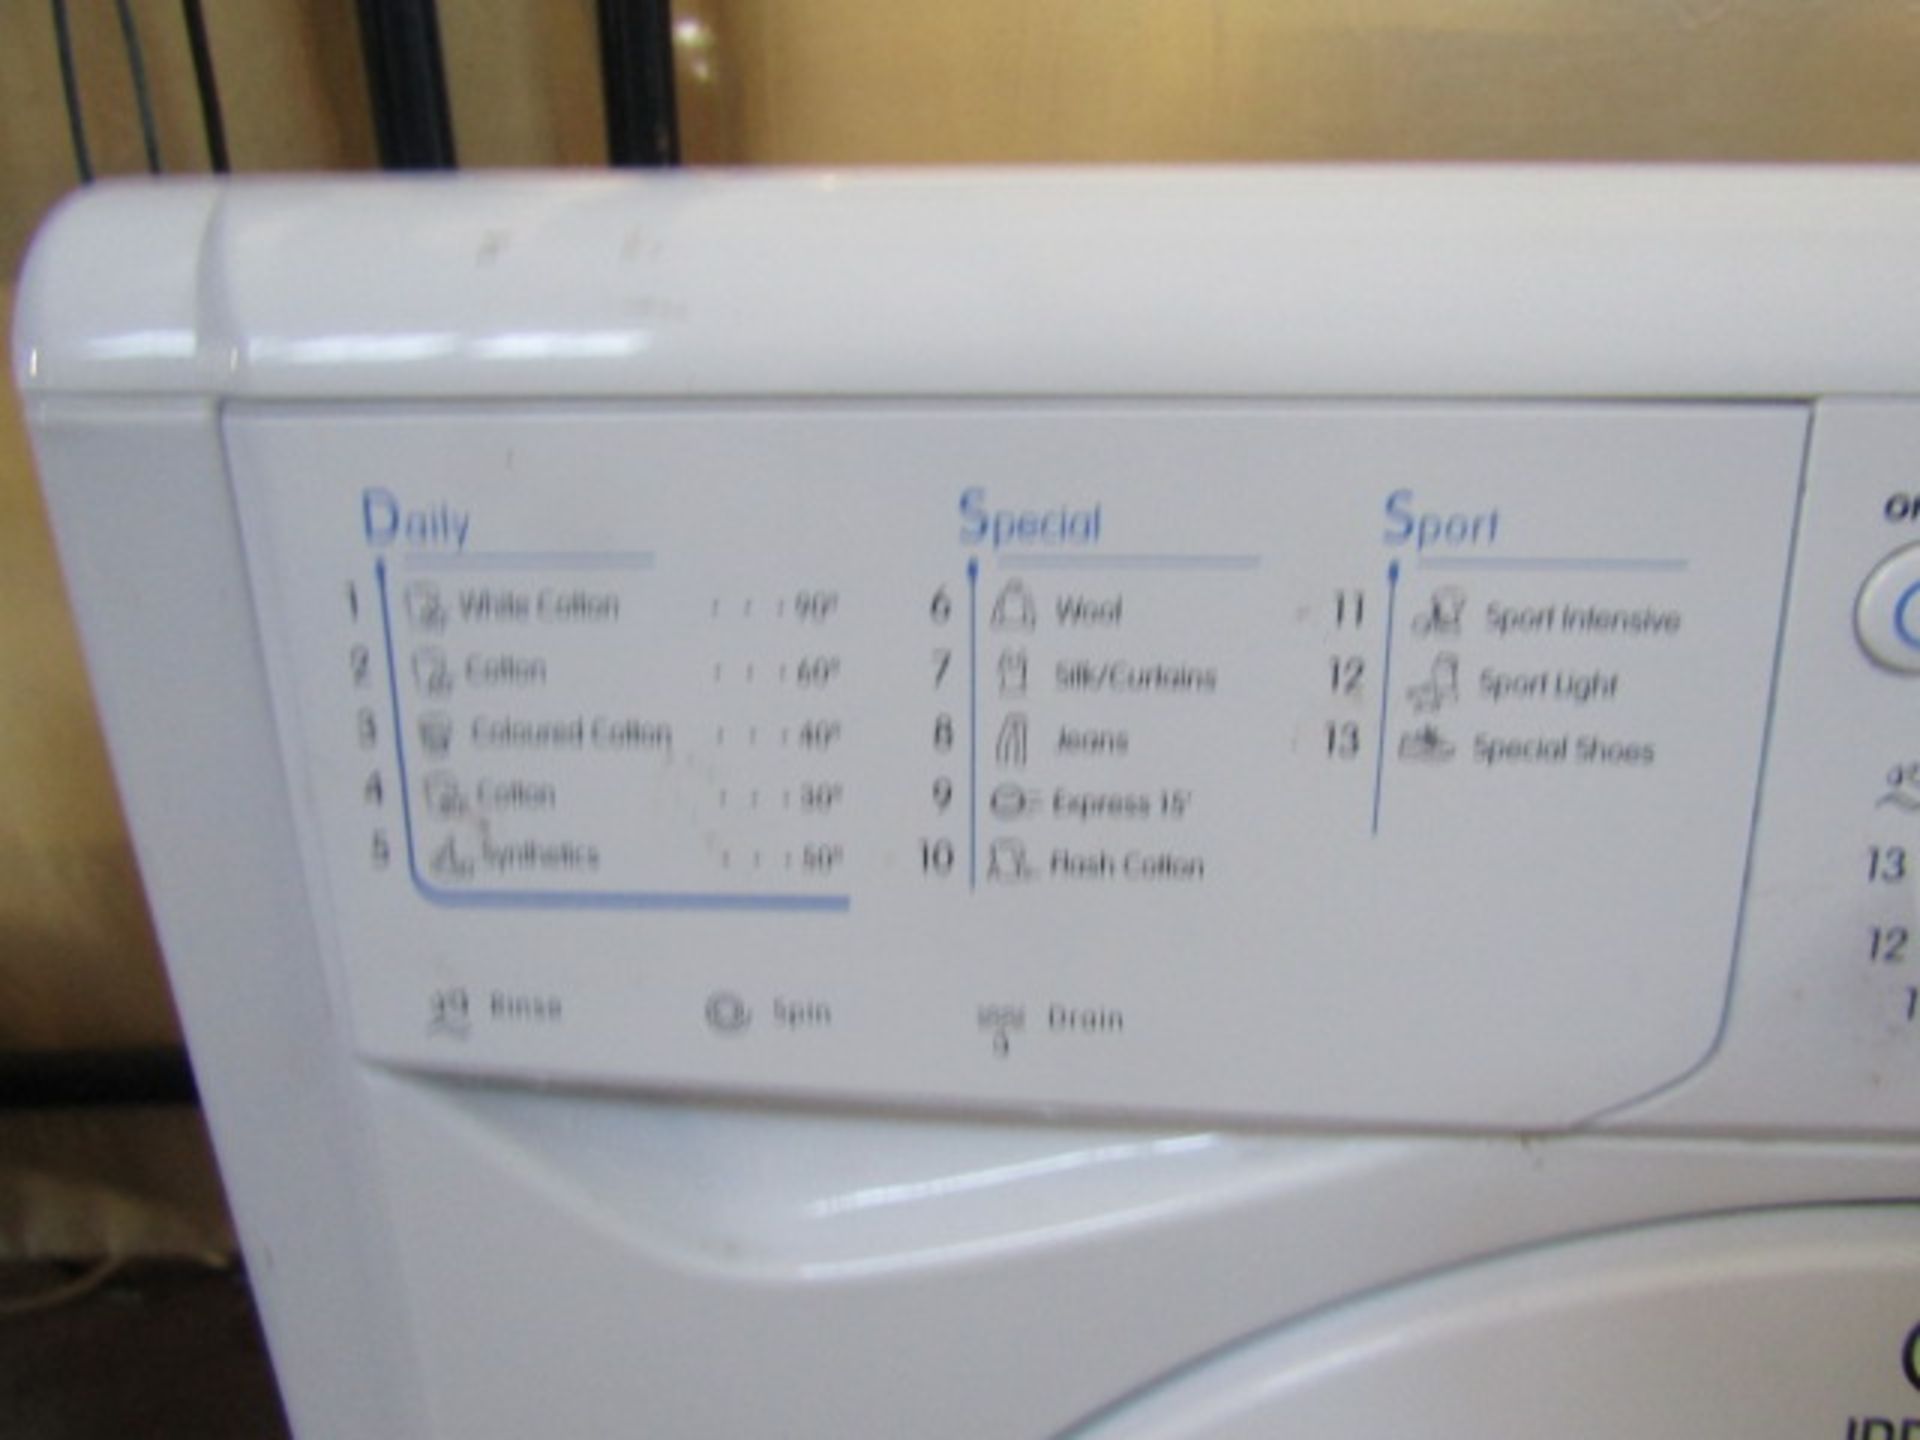 Indesit washing machine - Image 2 of 3